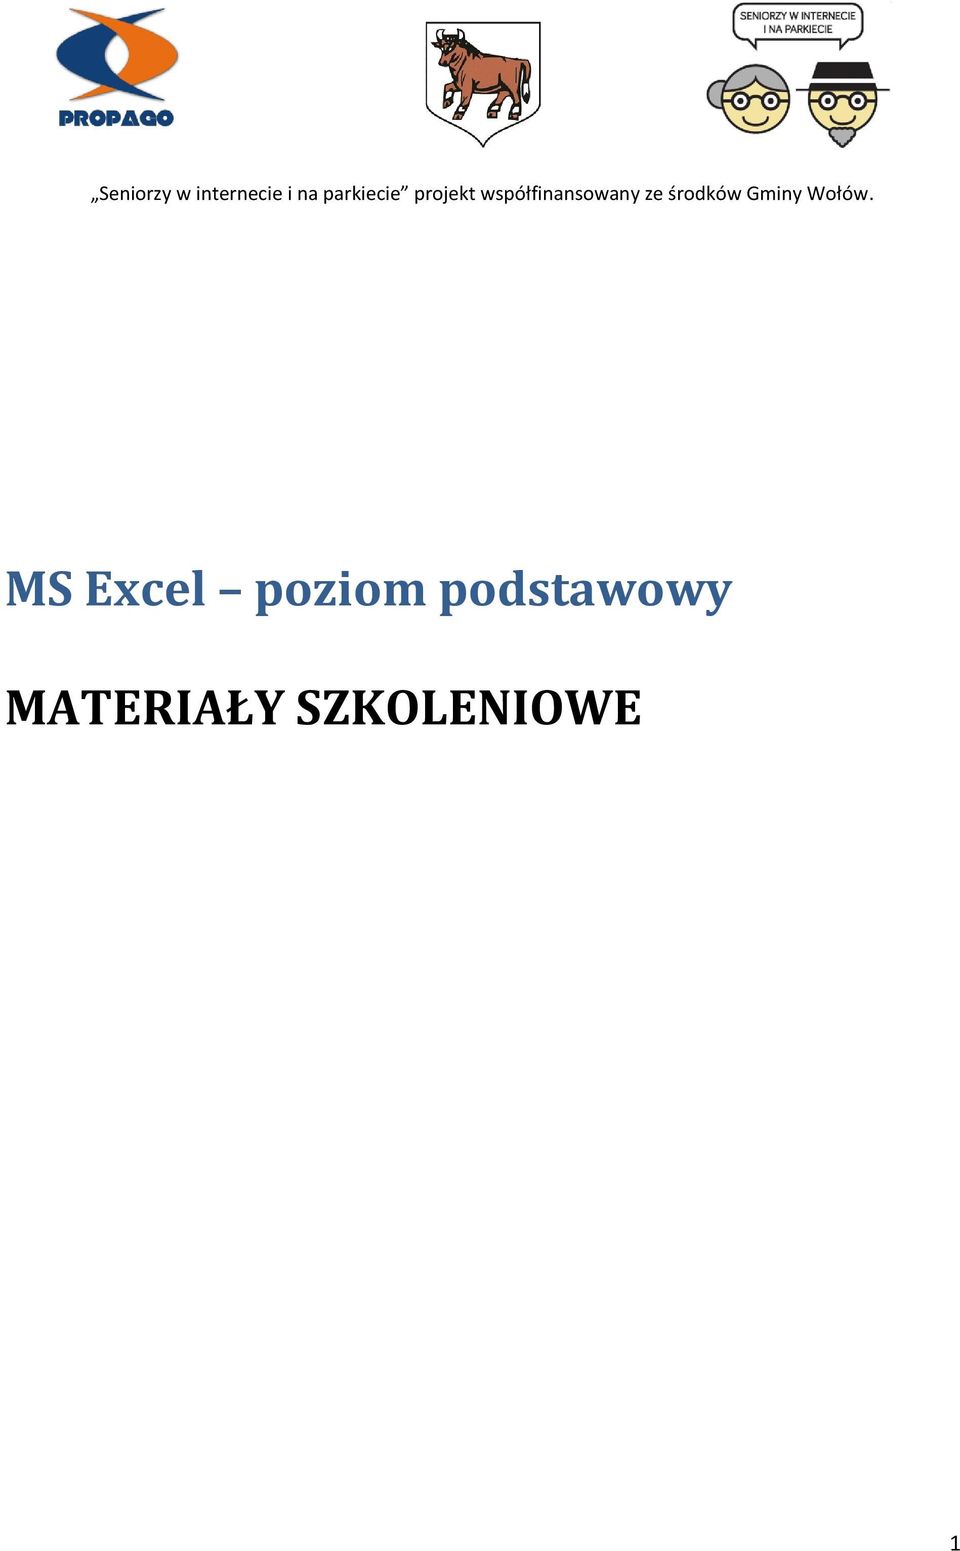 Ms Excel Poziom Podstawowy Materialy Szkoleniowe Pdf Free Download